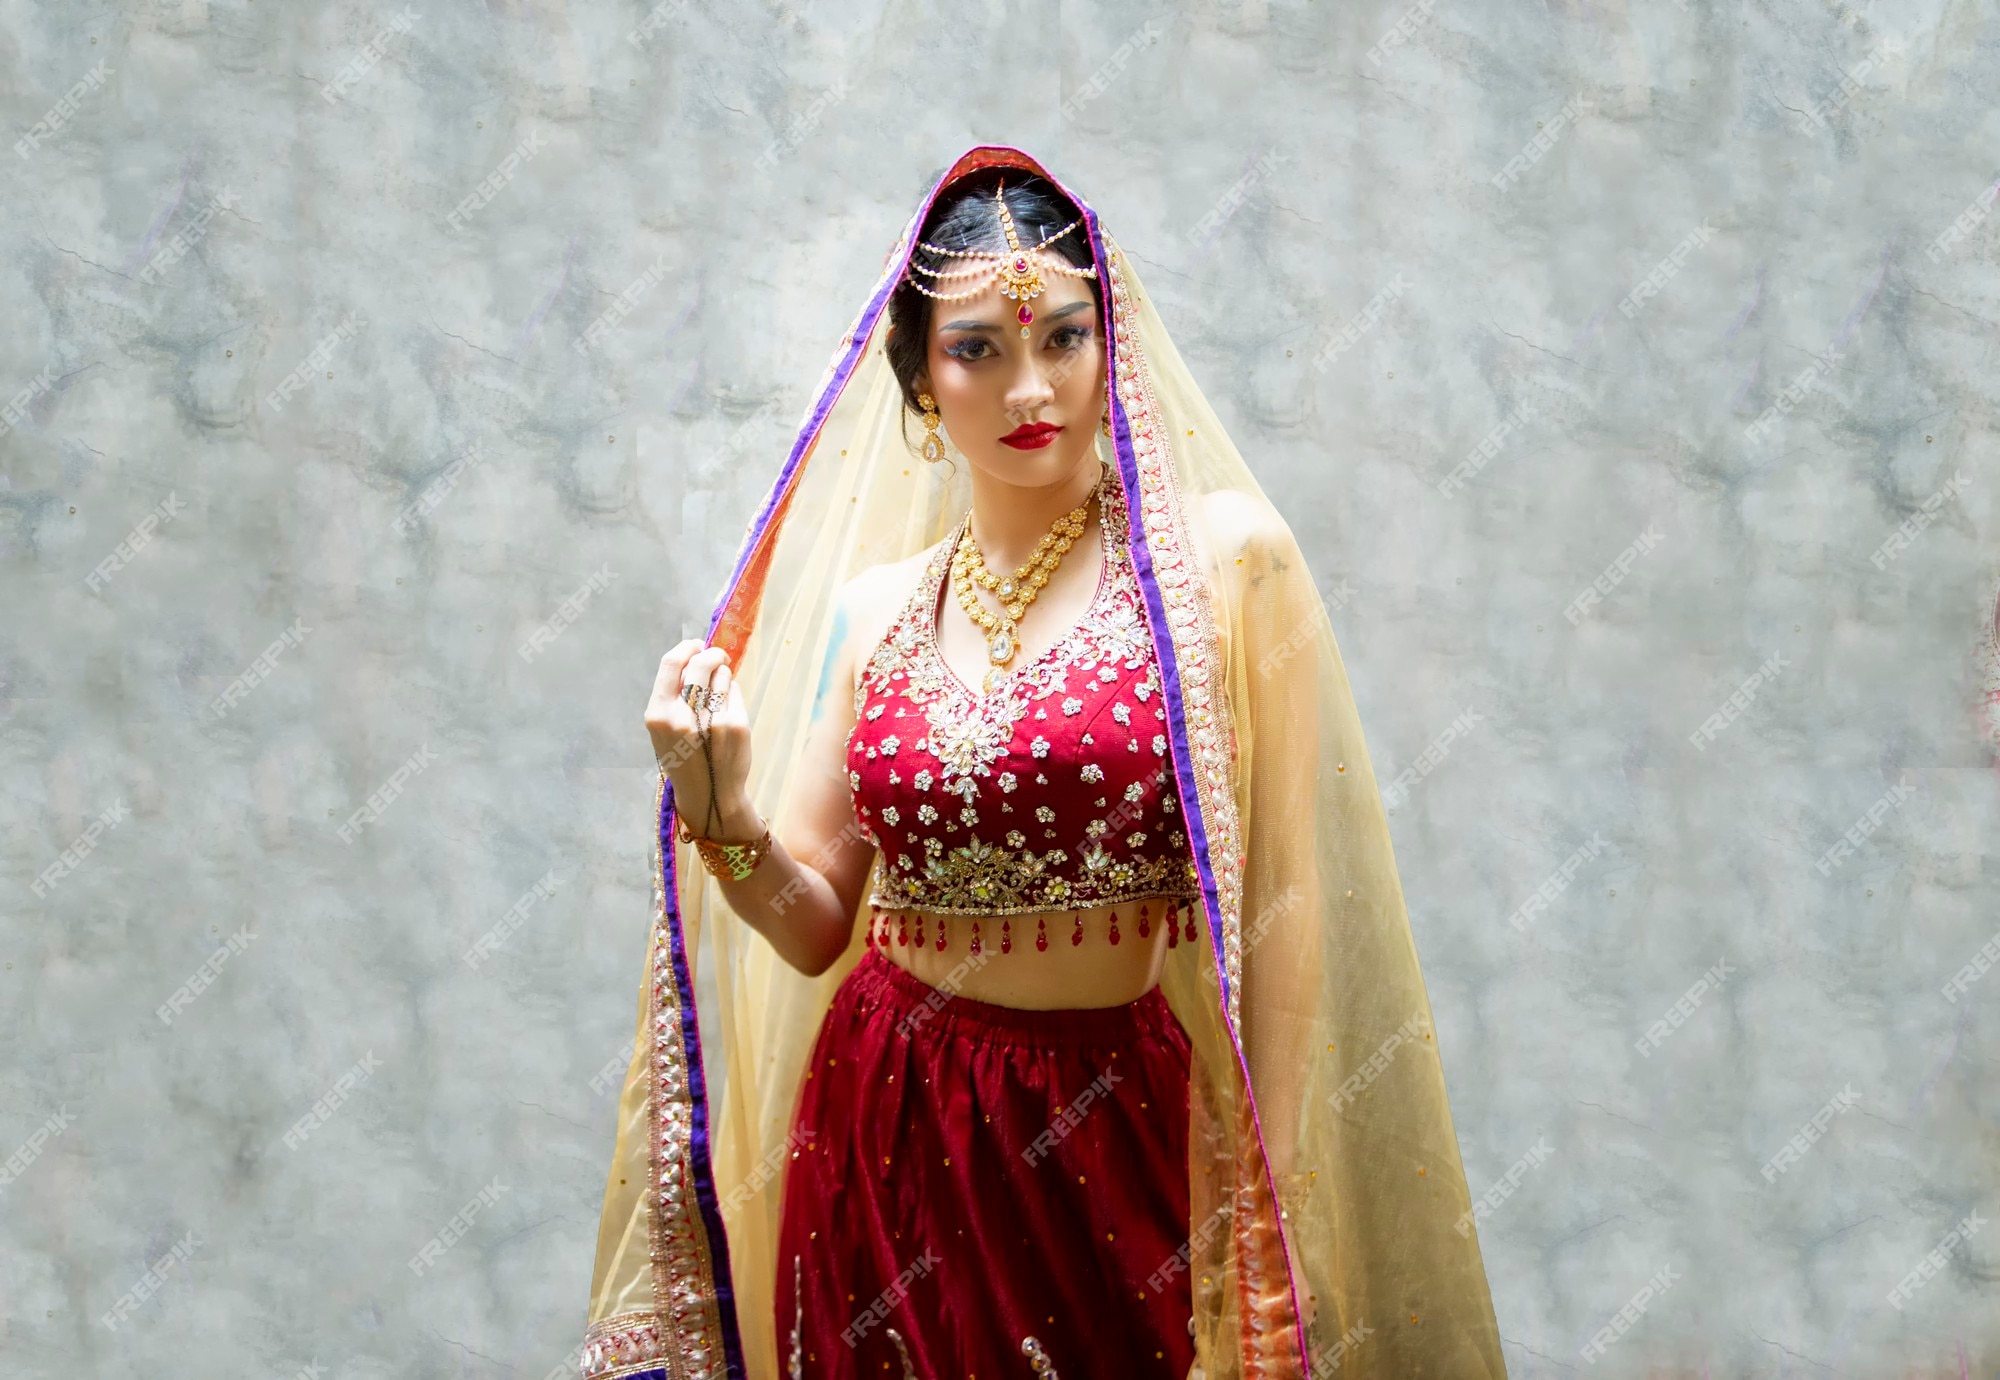 Hermosa vistiendo sari mujer en ropa étnica la india | Premium